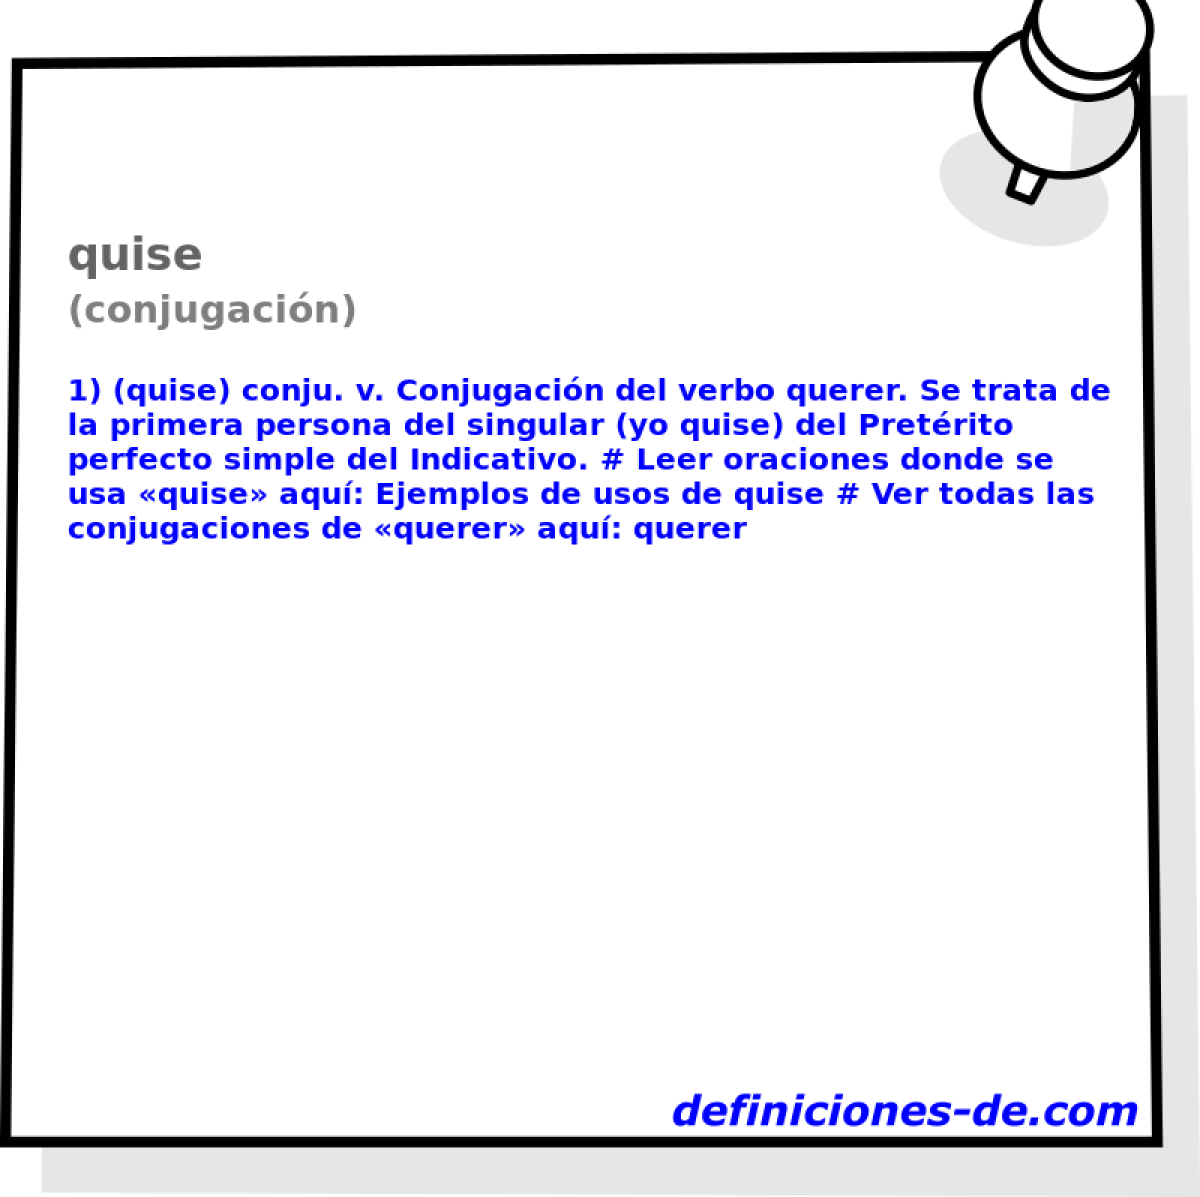 quise (conjugacin)